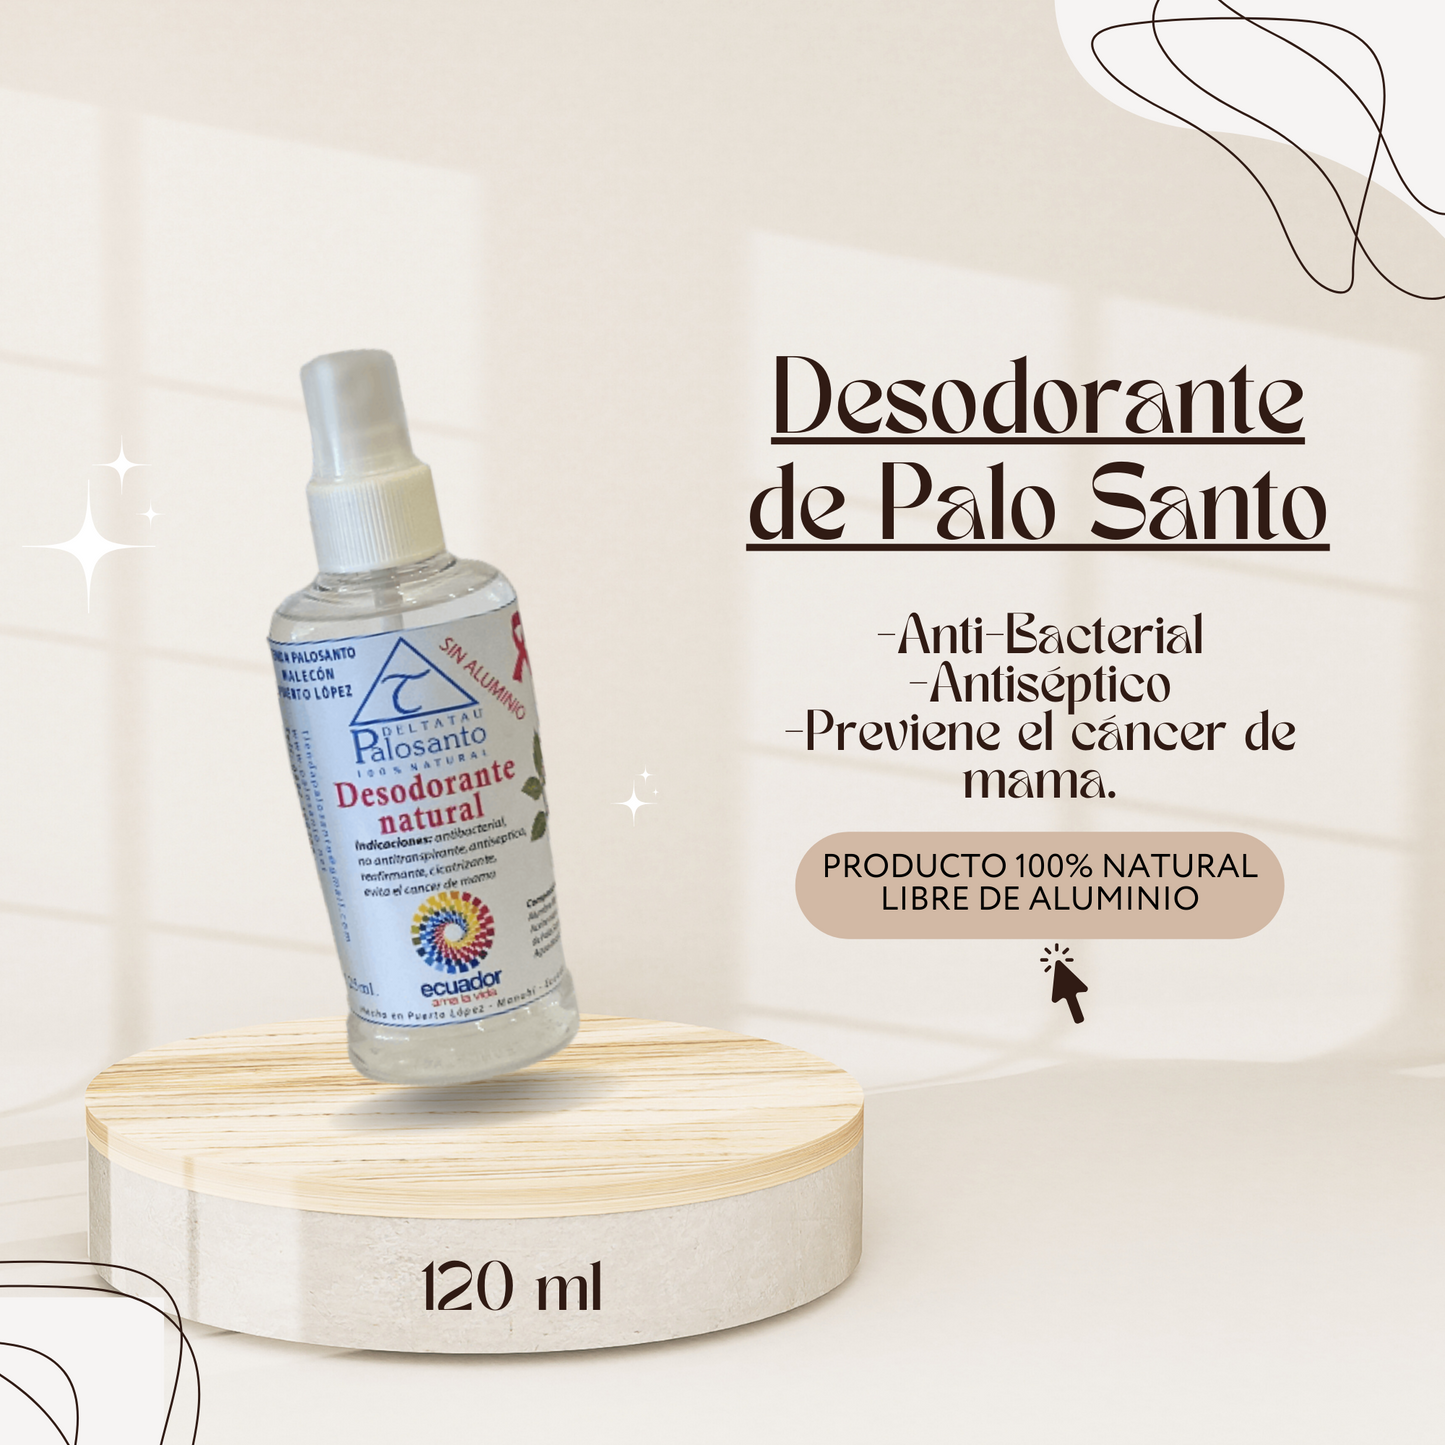 Desodorante Natural de Palo Santo